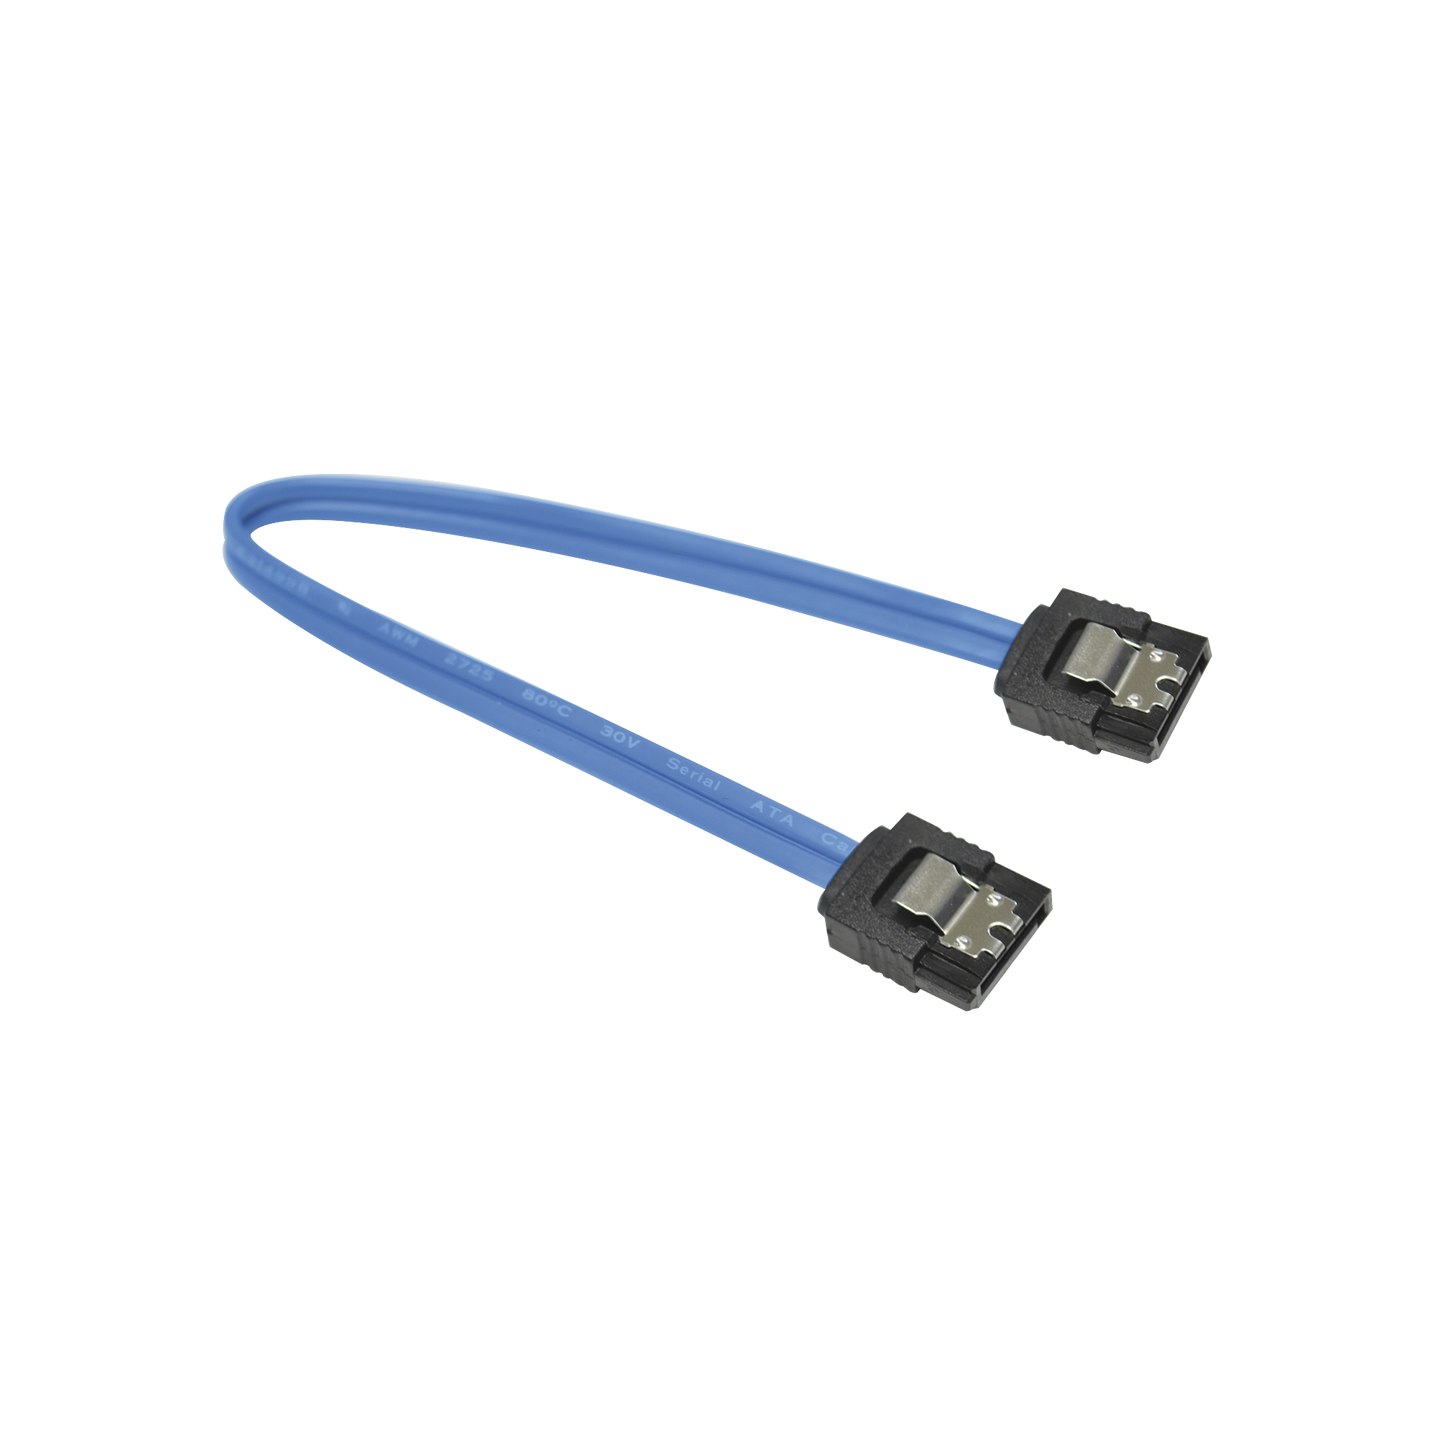 Cable e-SATA para DVR / NVR epcom, HiLook y HIKVISION / Compatible con Equipos de 1 Sola Bahia / Compatible con Cualquier DVR / NVR